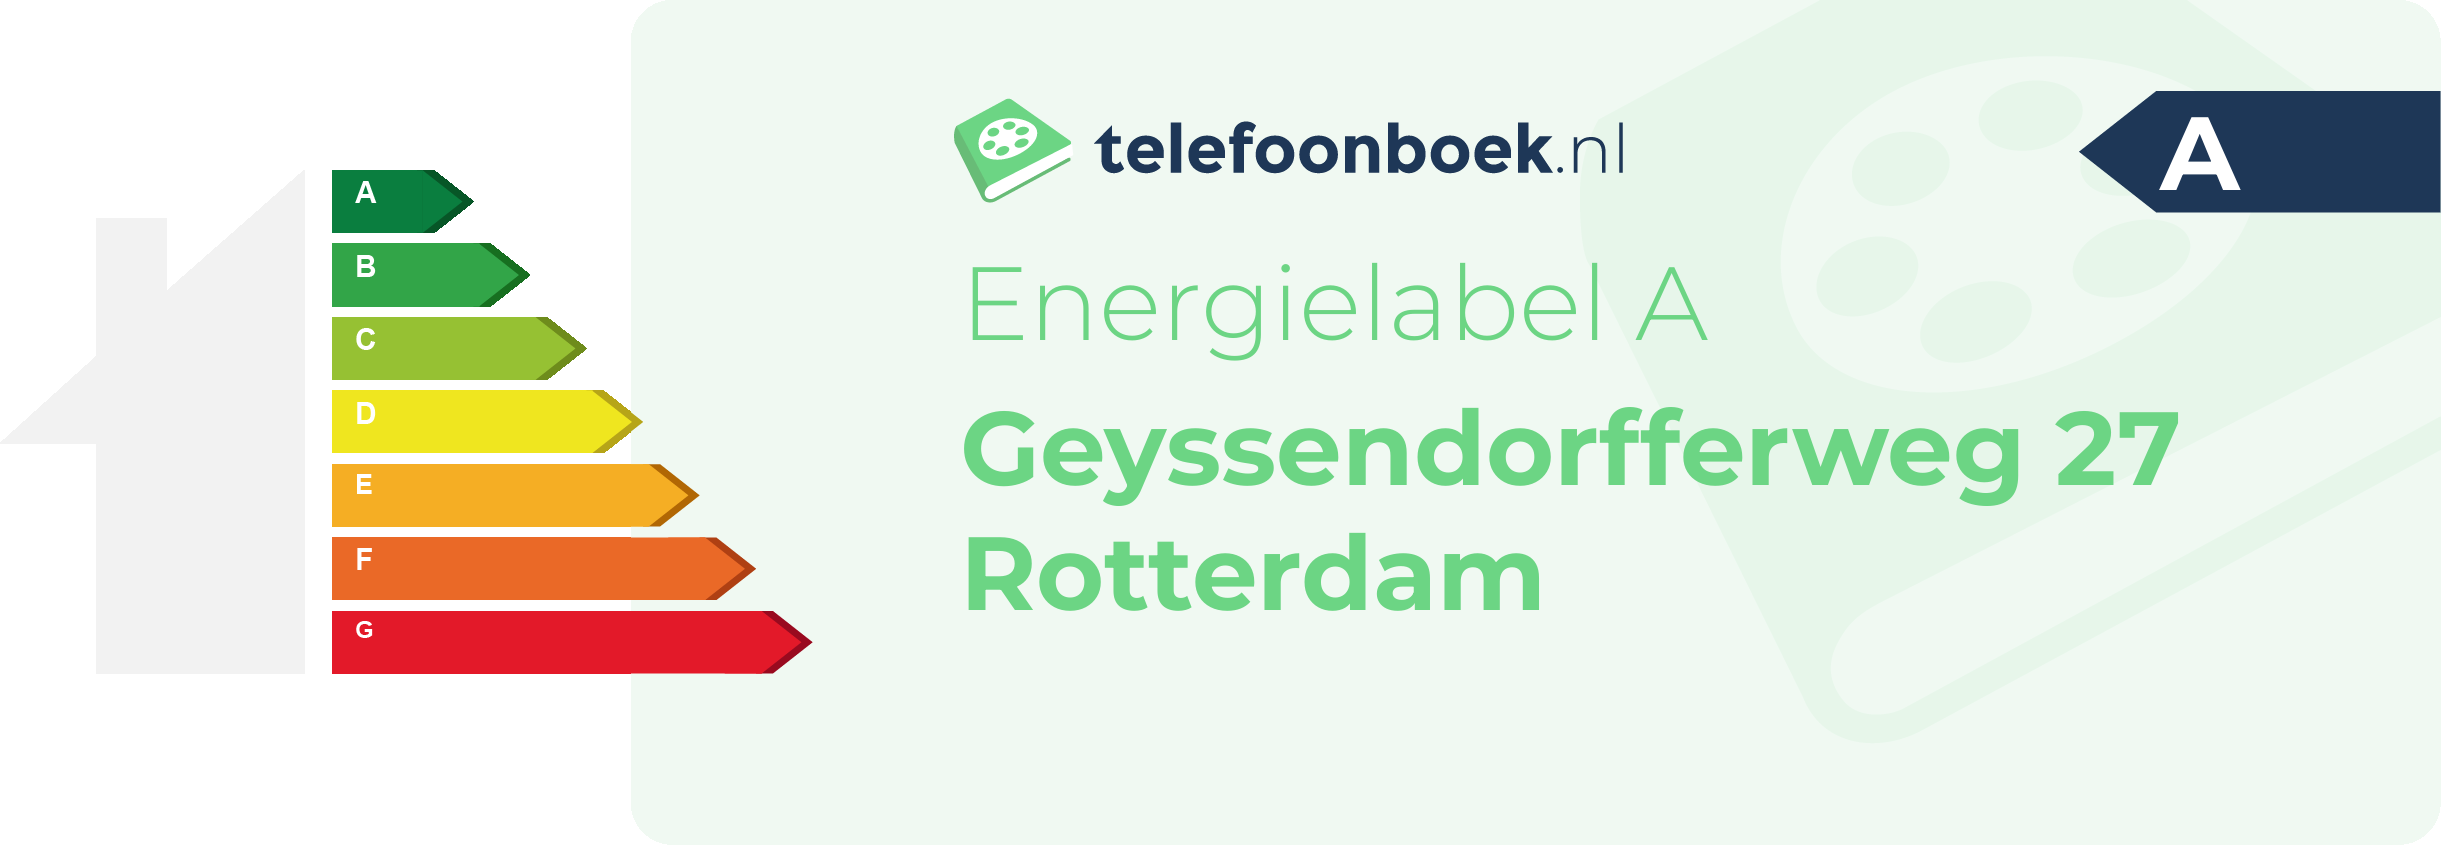 Energielabel Geyssendorfferweg 27 Rotterdam